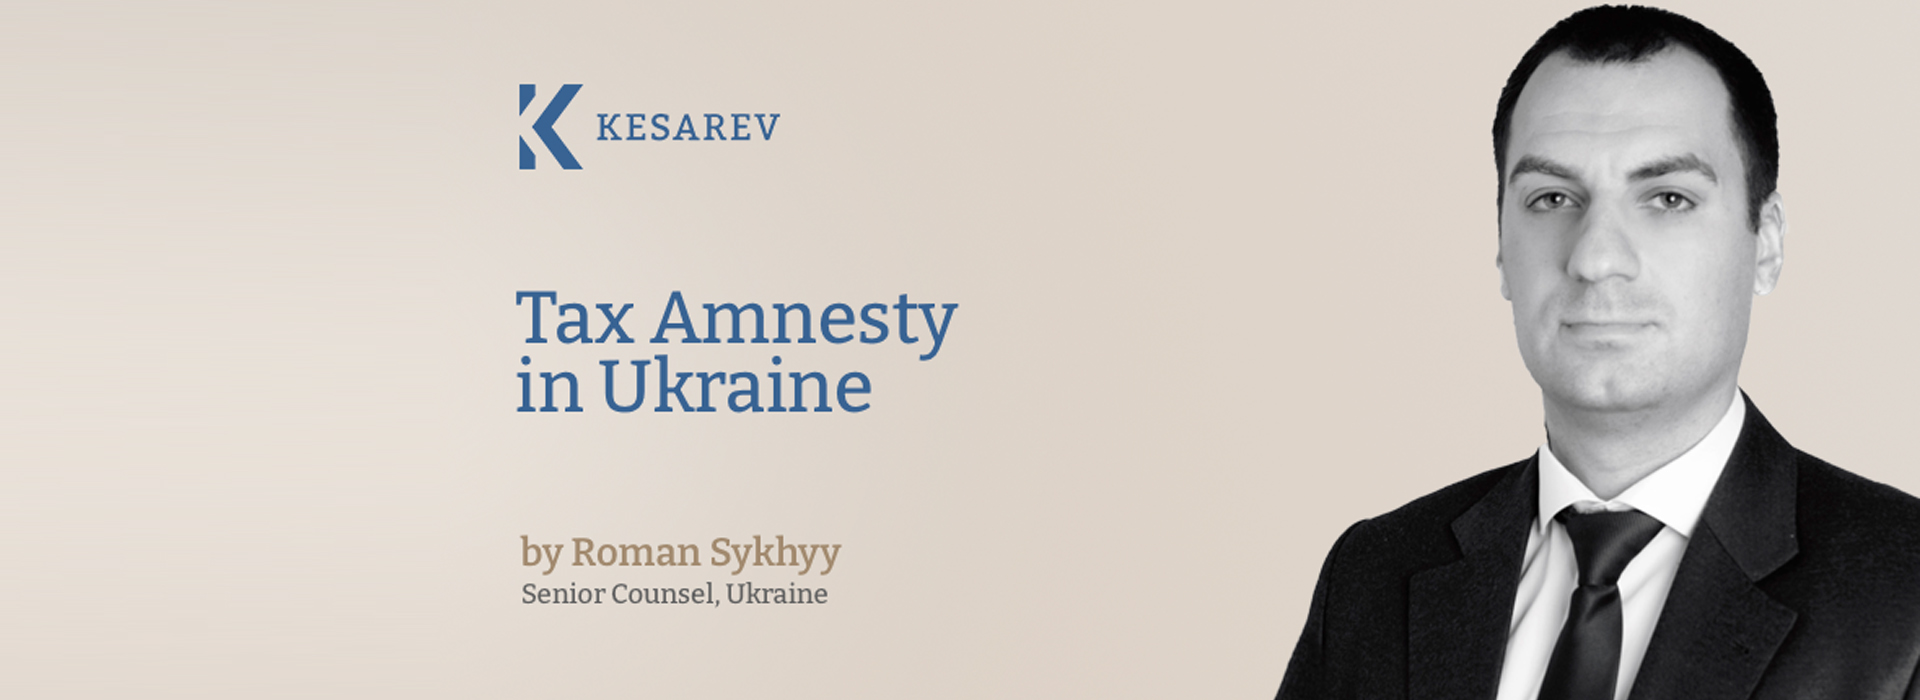 Tax Amnesty in Ukraine